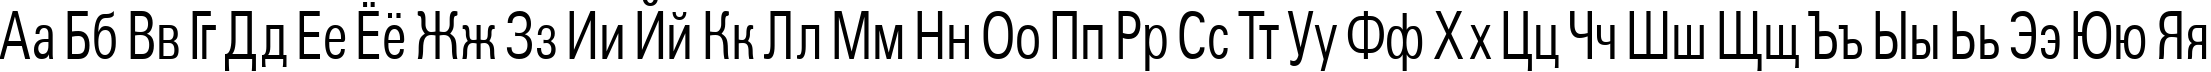 Пример написания русского алфавита шрифтом a_GroticCn